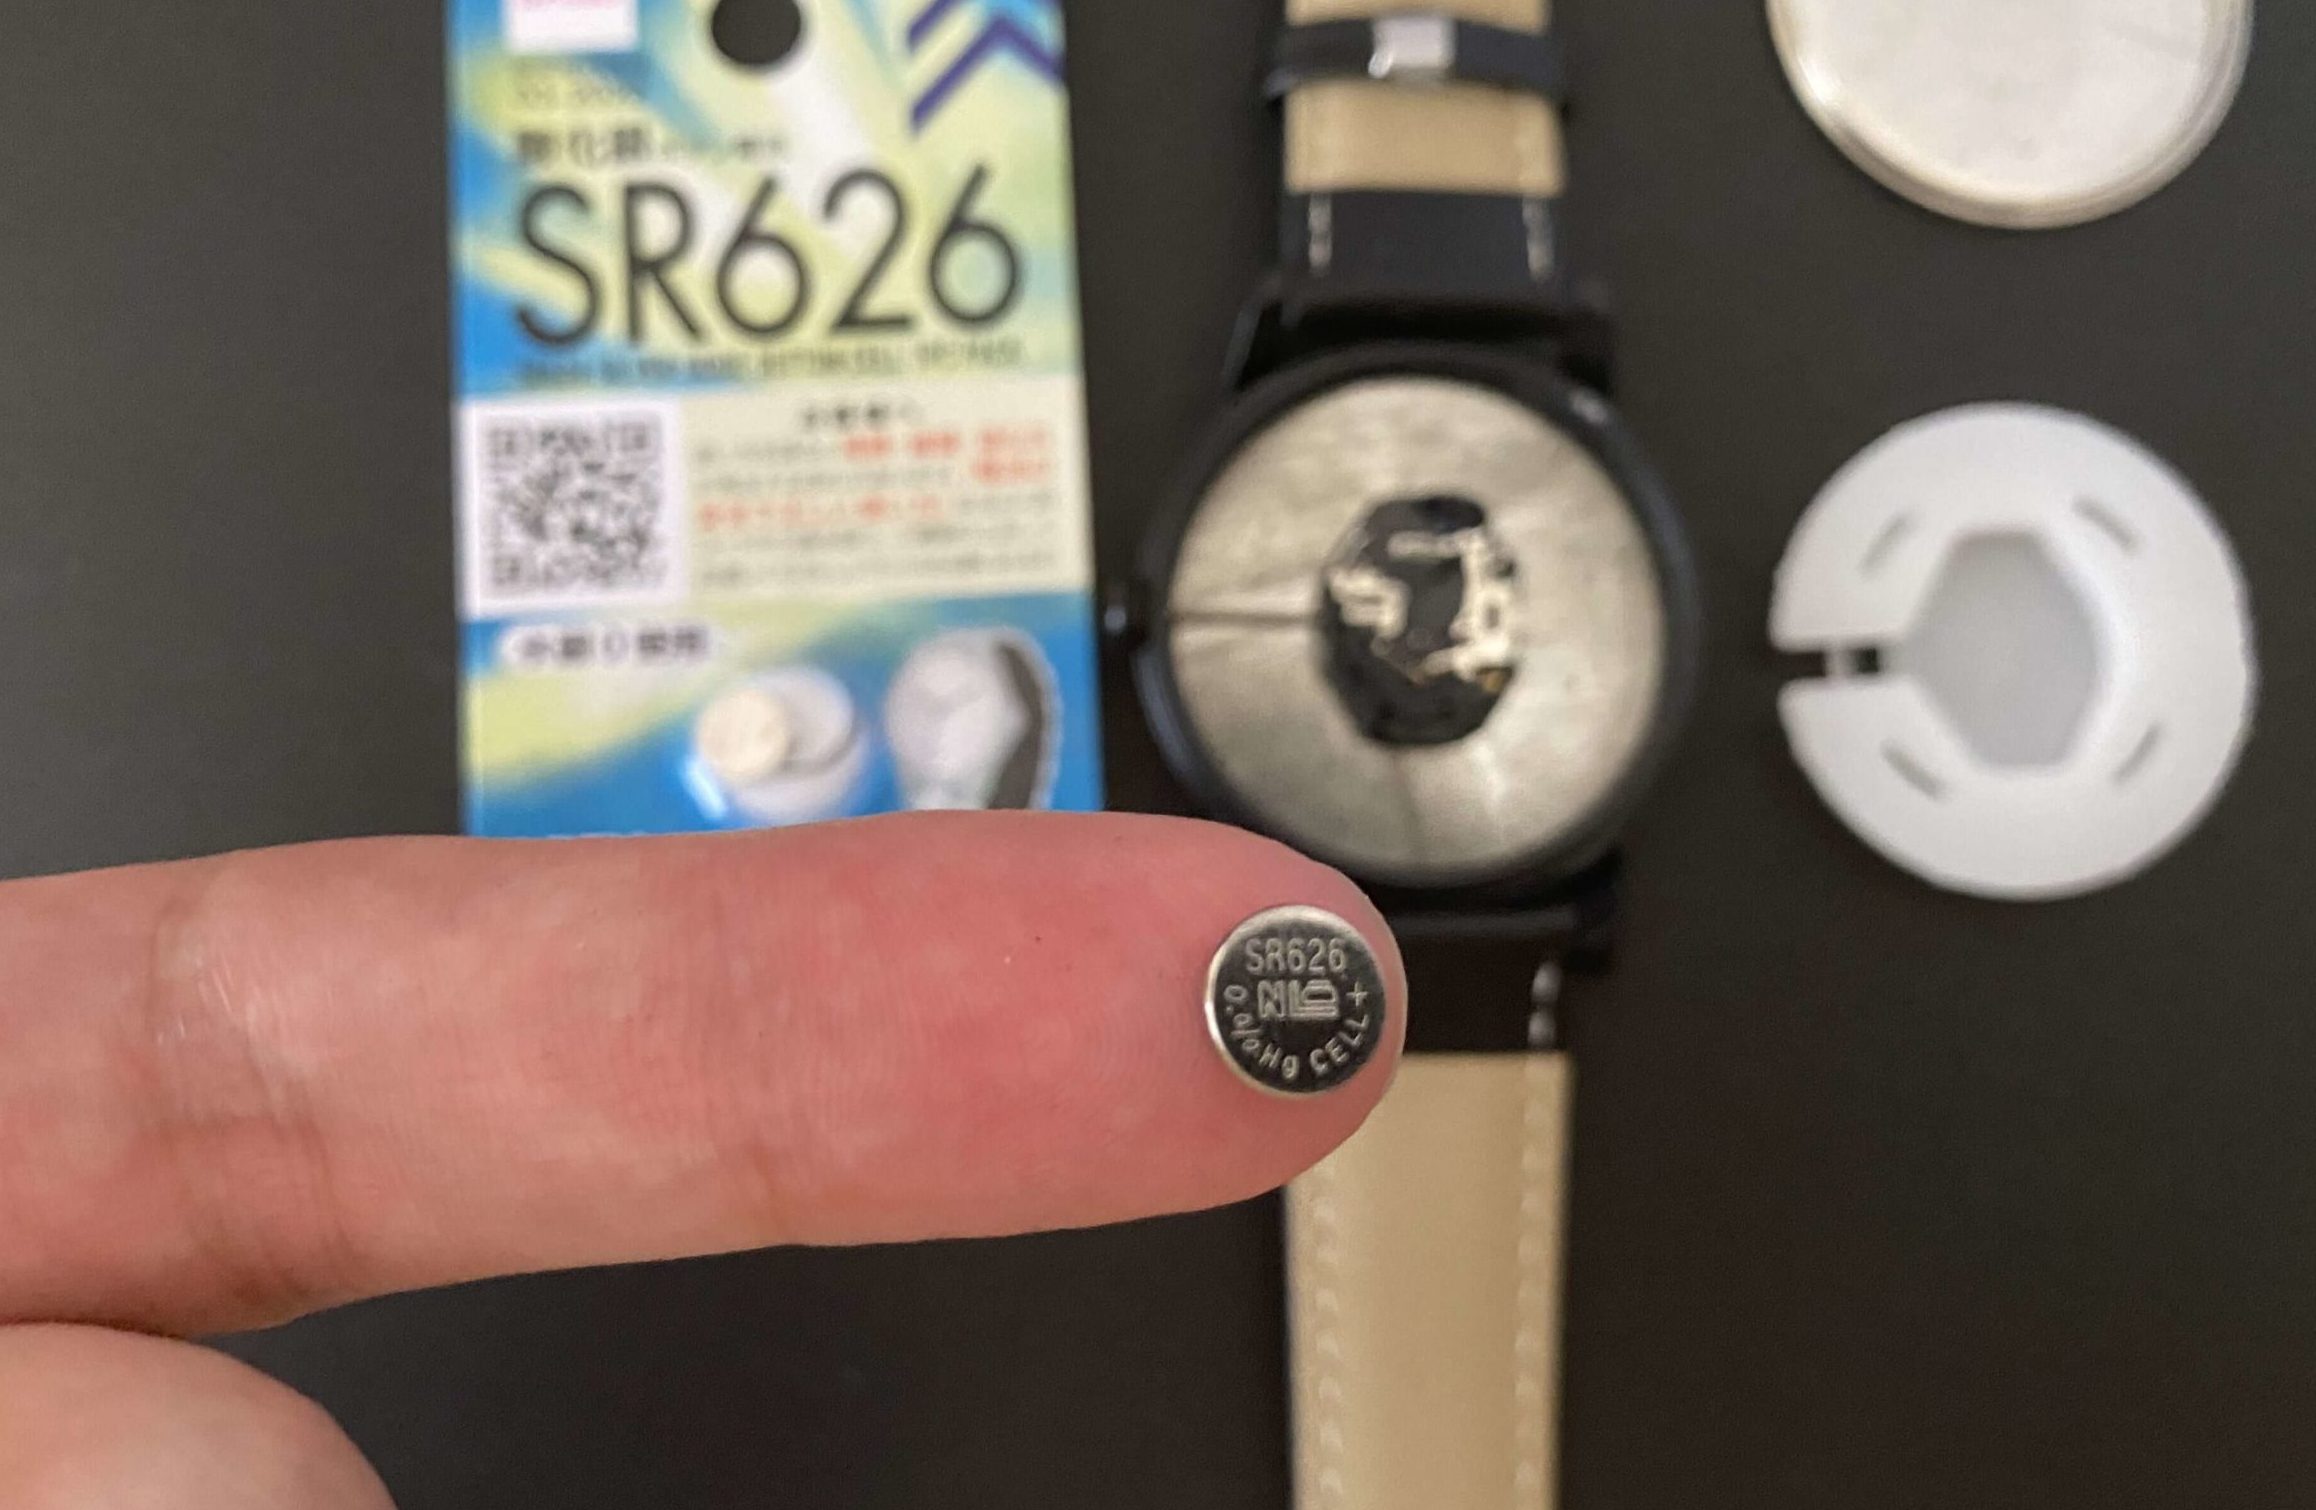 電池交換のためにダイソー腕時計からSR626SWを取り出した